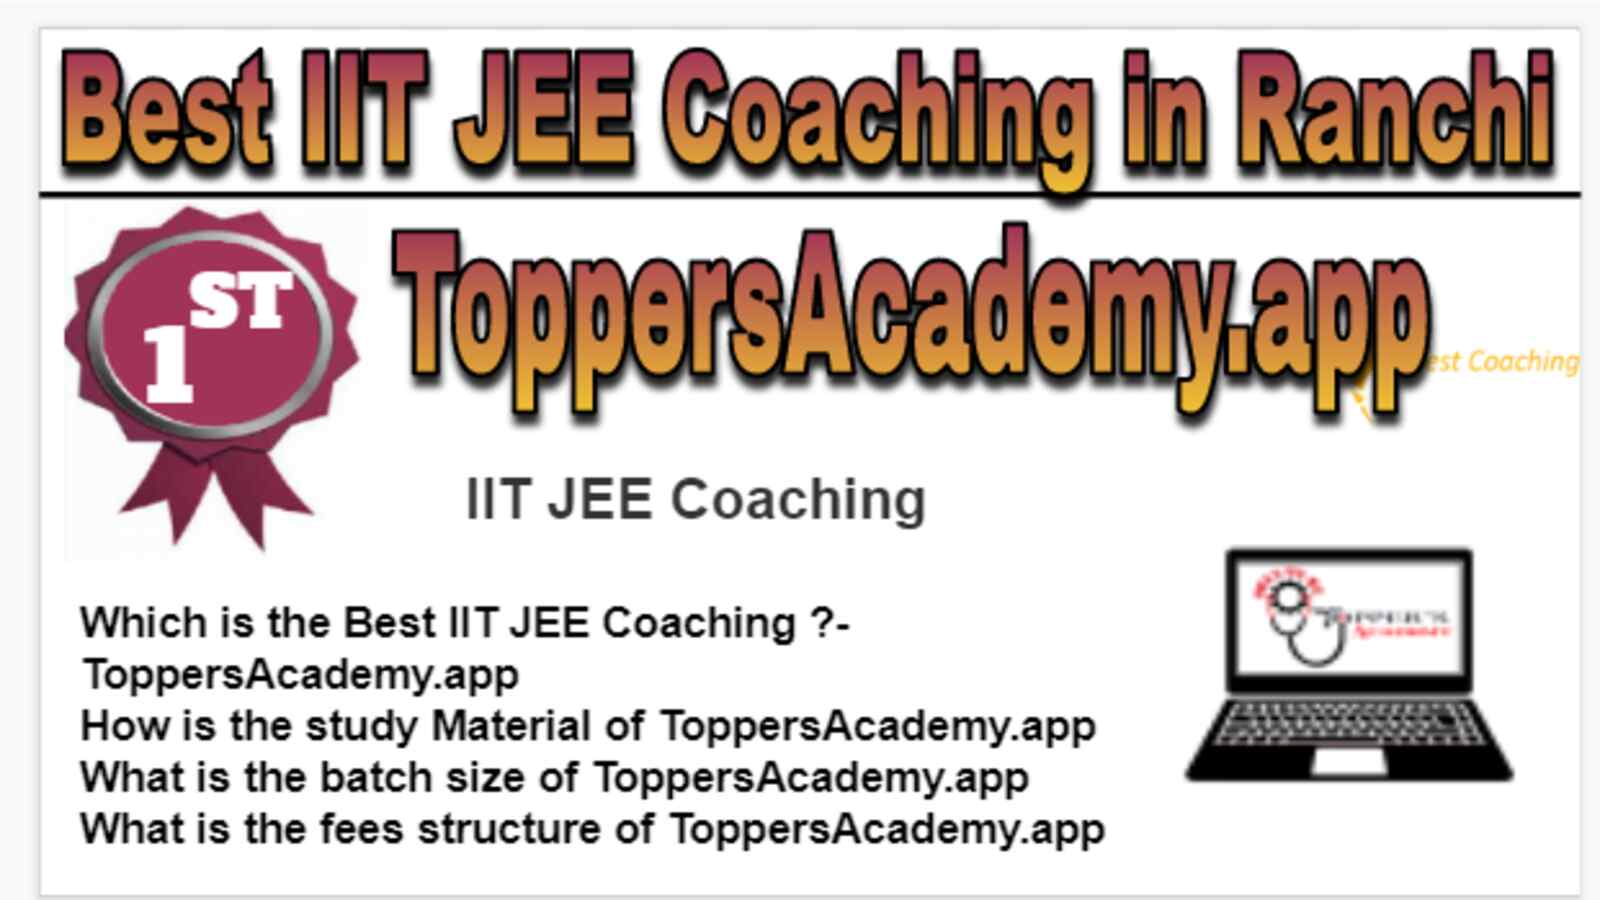 Rank 1 Best IIT JEE Coaching in Ranchi